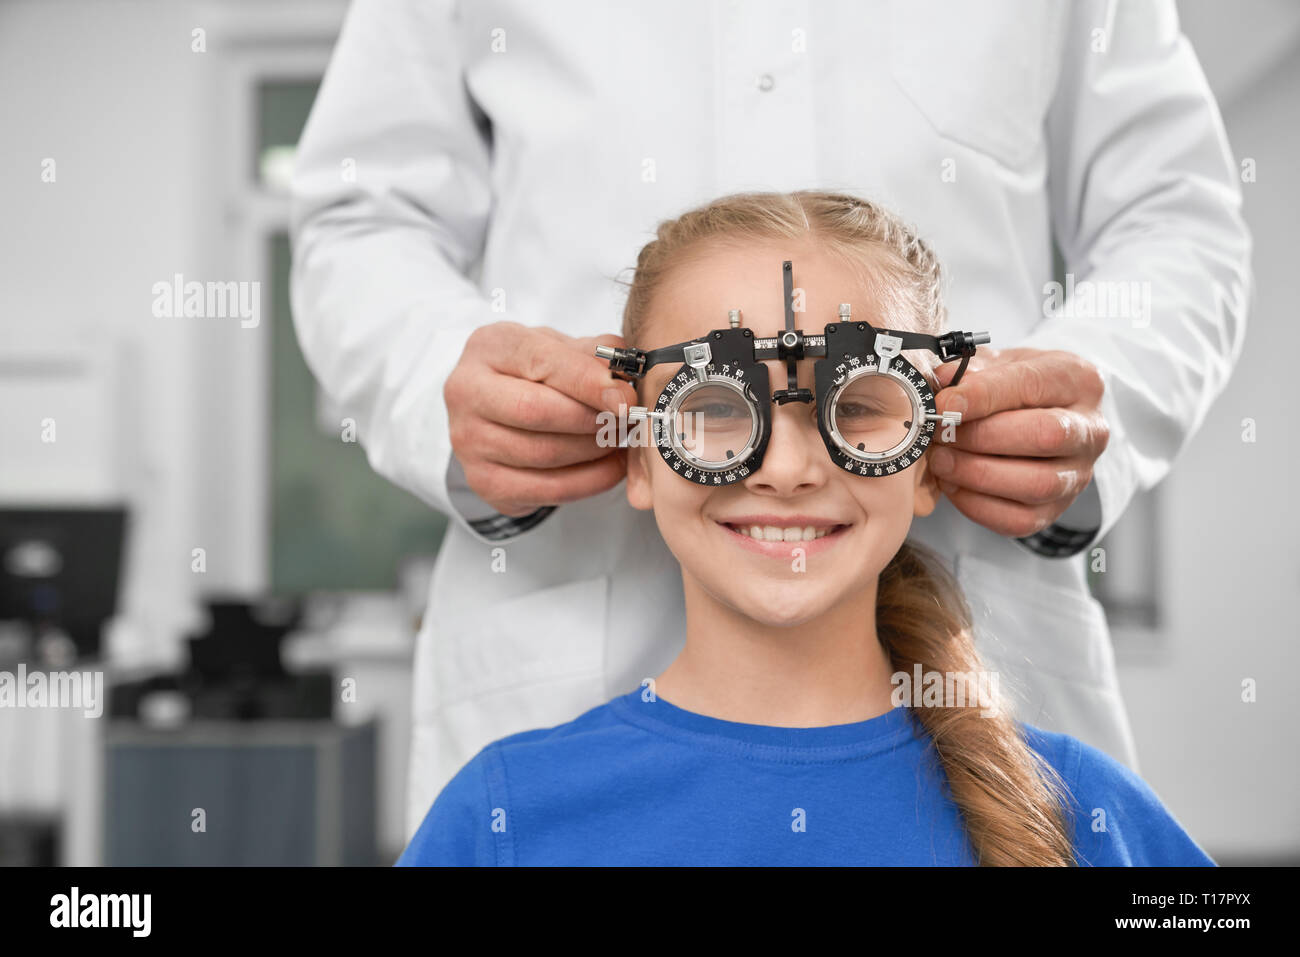 Oftalmólogo en bata blanca con equipo médico especial para la salud de los ojos, la comprobación de la visión. Sonriente chica sentada y mirando a la cámara a través de pruebas de gafas. Foto de stock